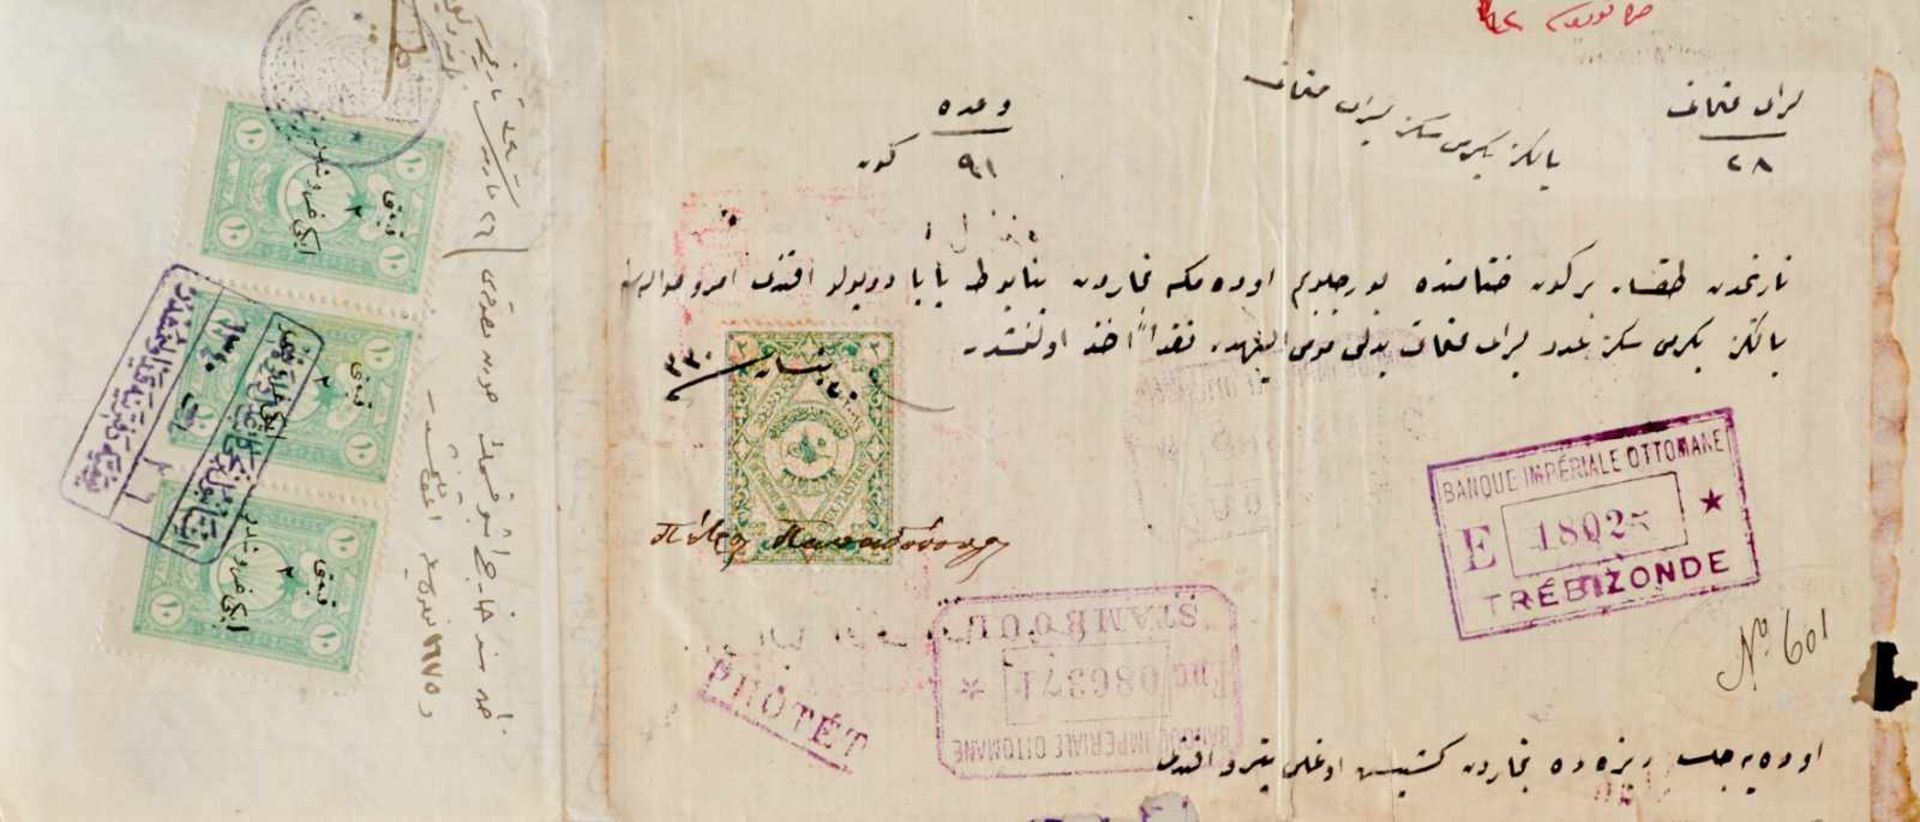 Osmanisches Reich Sammlung - Ca. 70 türkische Dokumente und Briefe, meistgedruckte Formulare hs. - Bild 4 aus 7